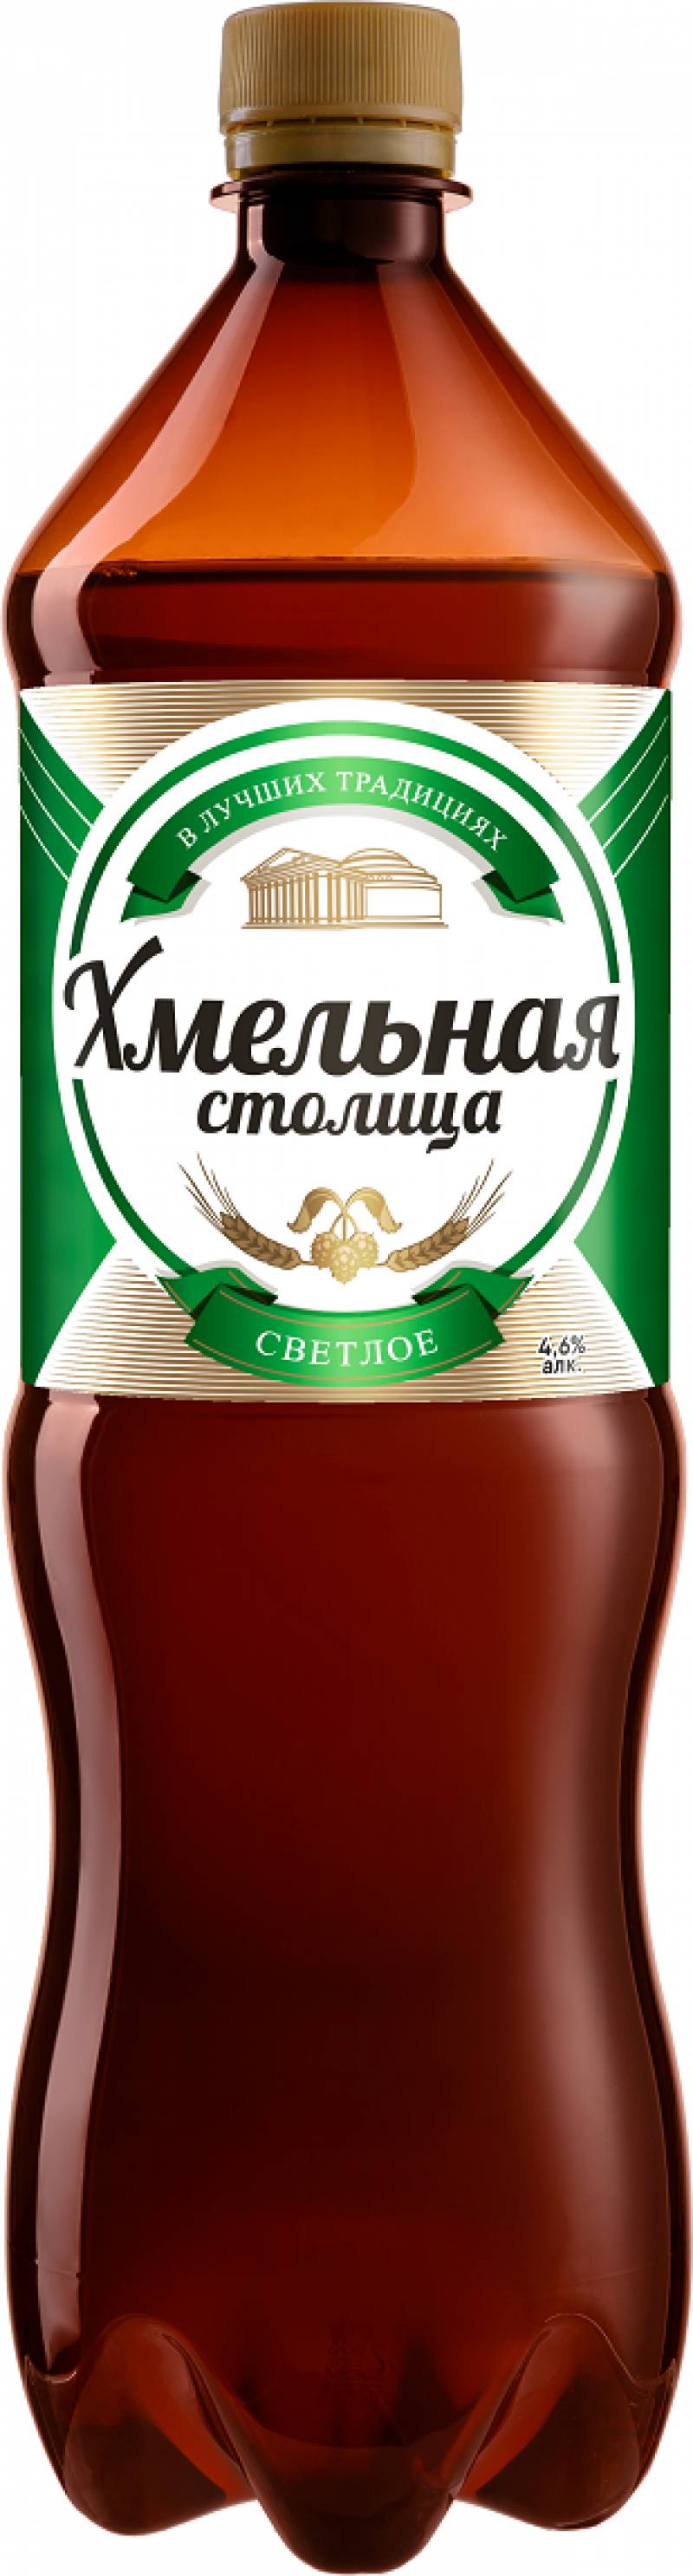 Пиво Хмельная Столица 1,35 л. (Россия)